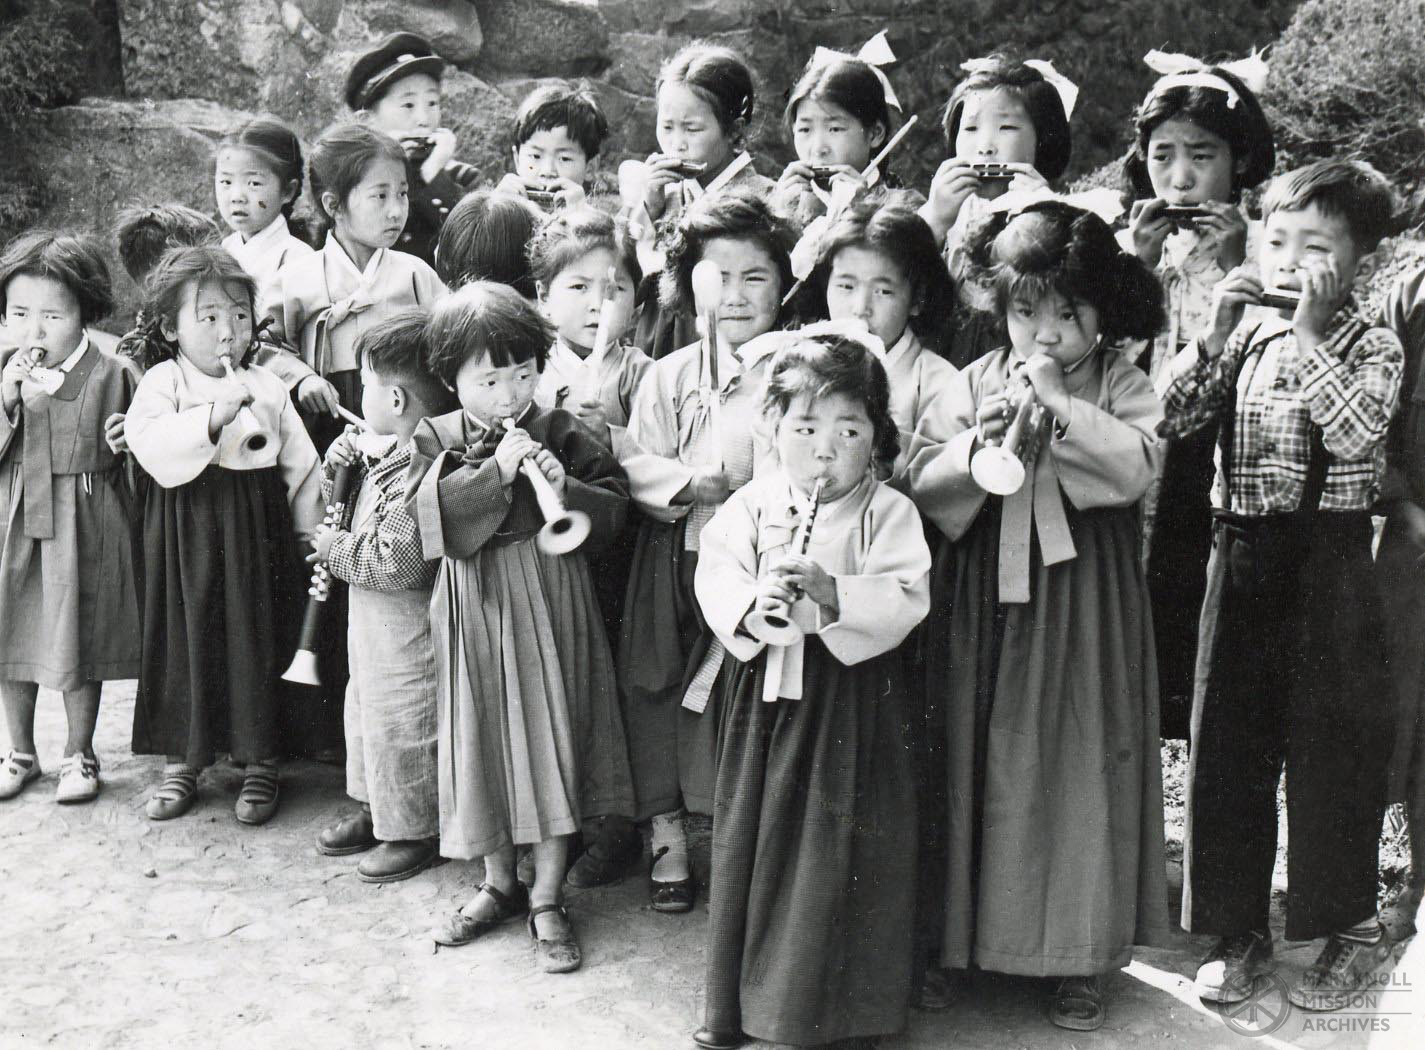 Children playing music, Korea